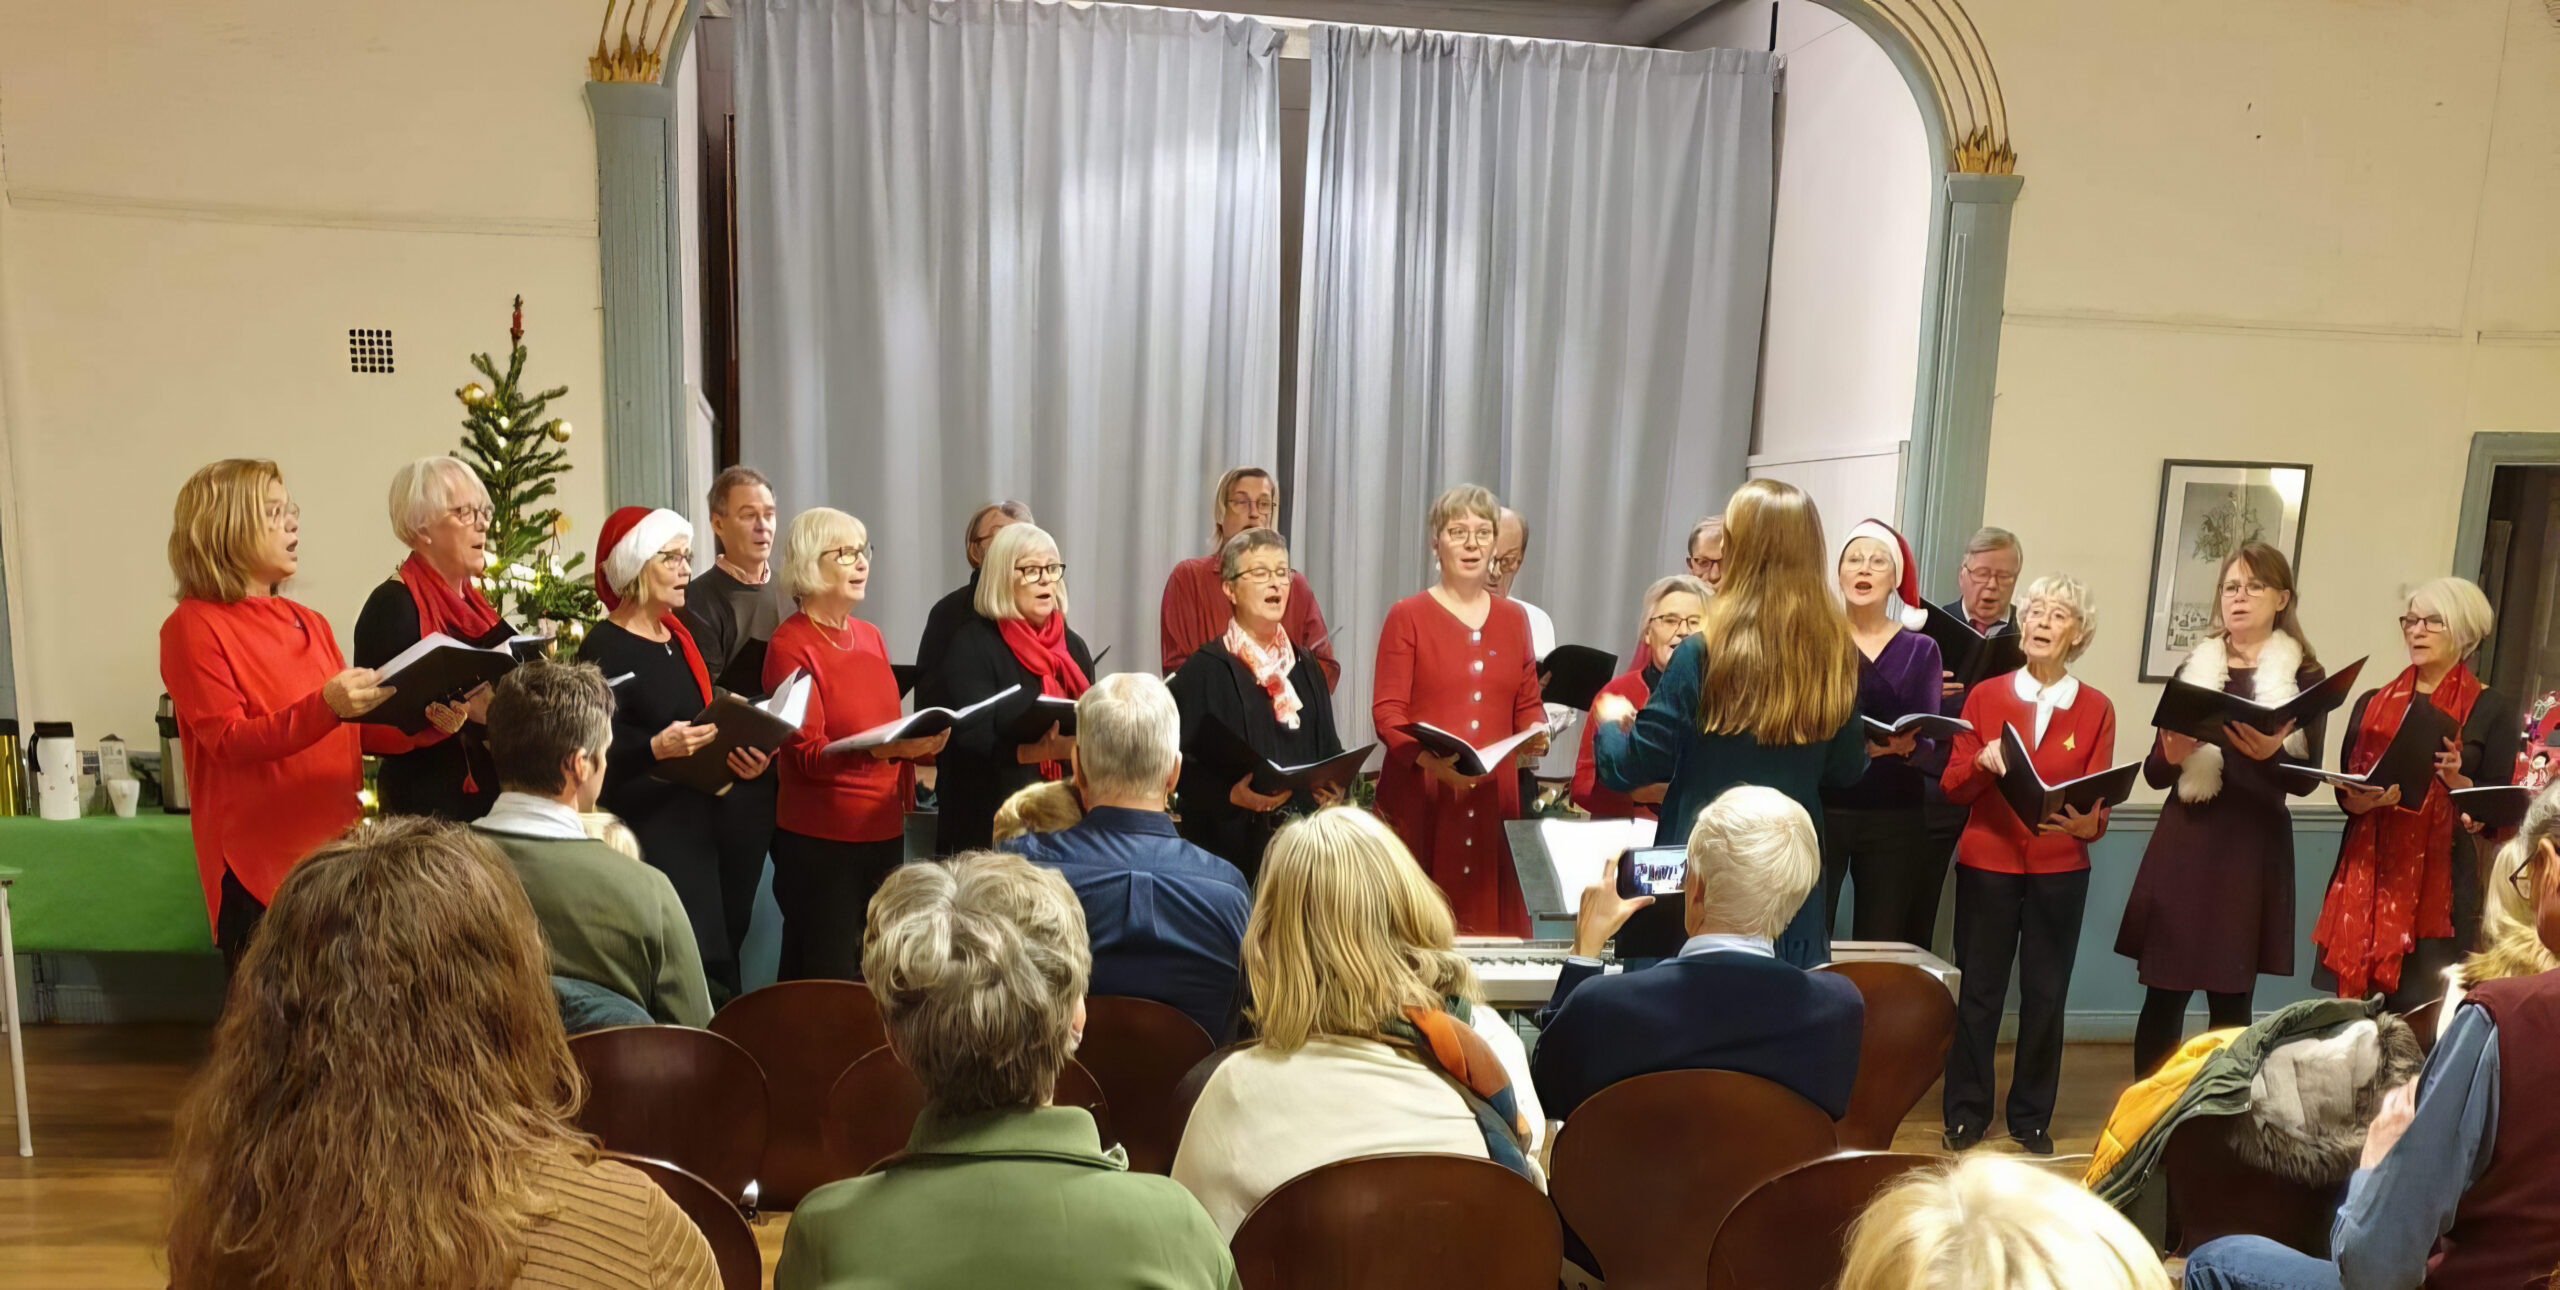 Julkonsert med Solala och Låtar&Läten i Knivsta